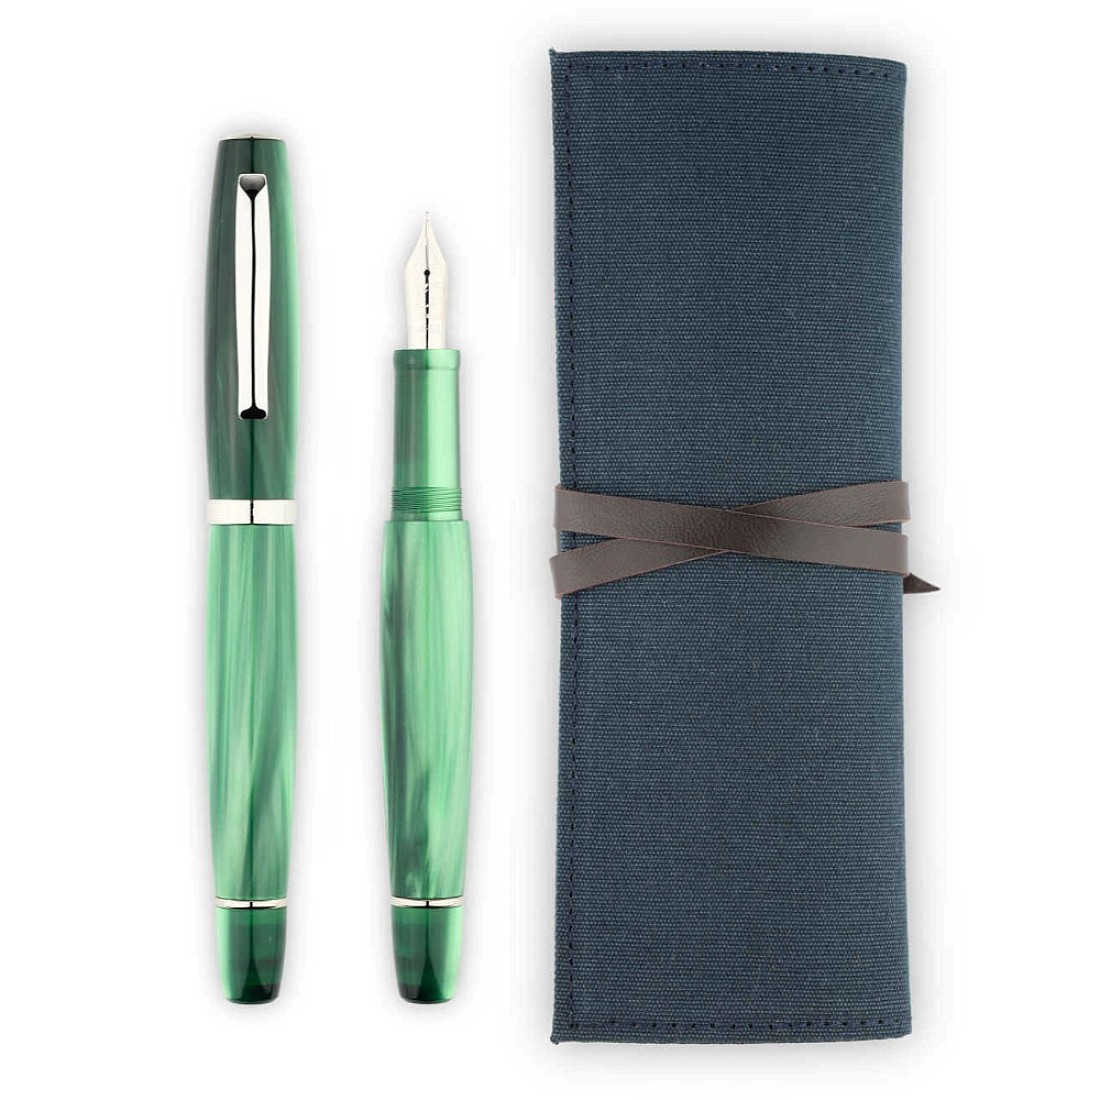 ELONG Chinese Grey Handmade Fountain Pen Case Bag Wraps  for 5 pen